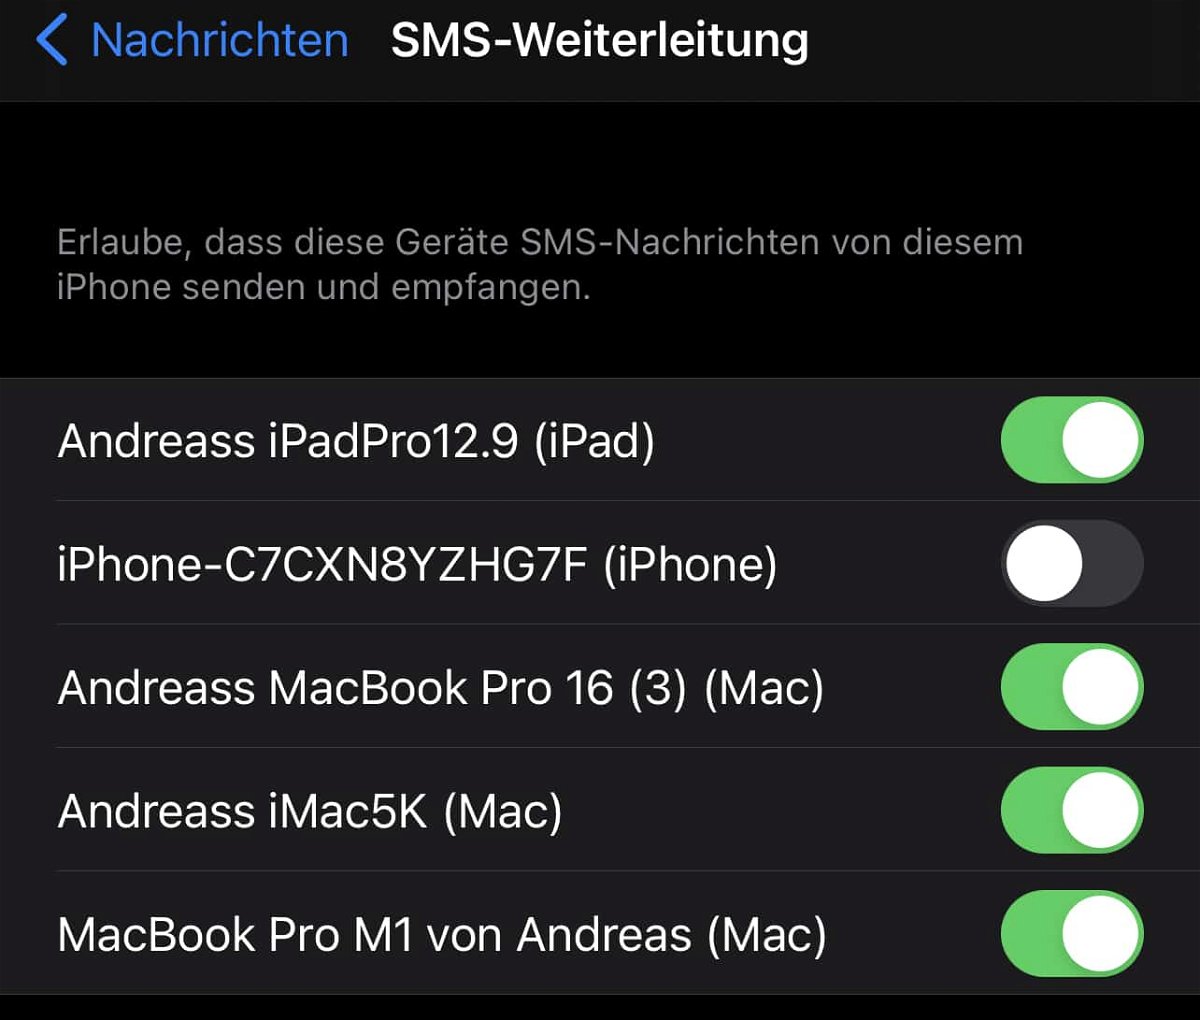 SMS-Weiterleitung zum iPad/Mac einrichten